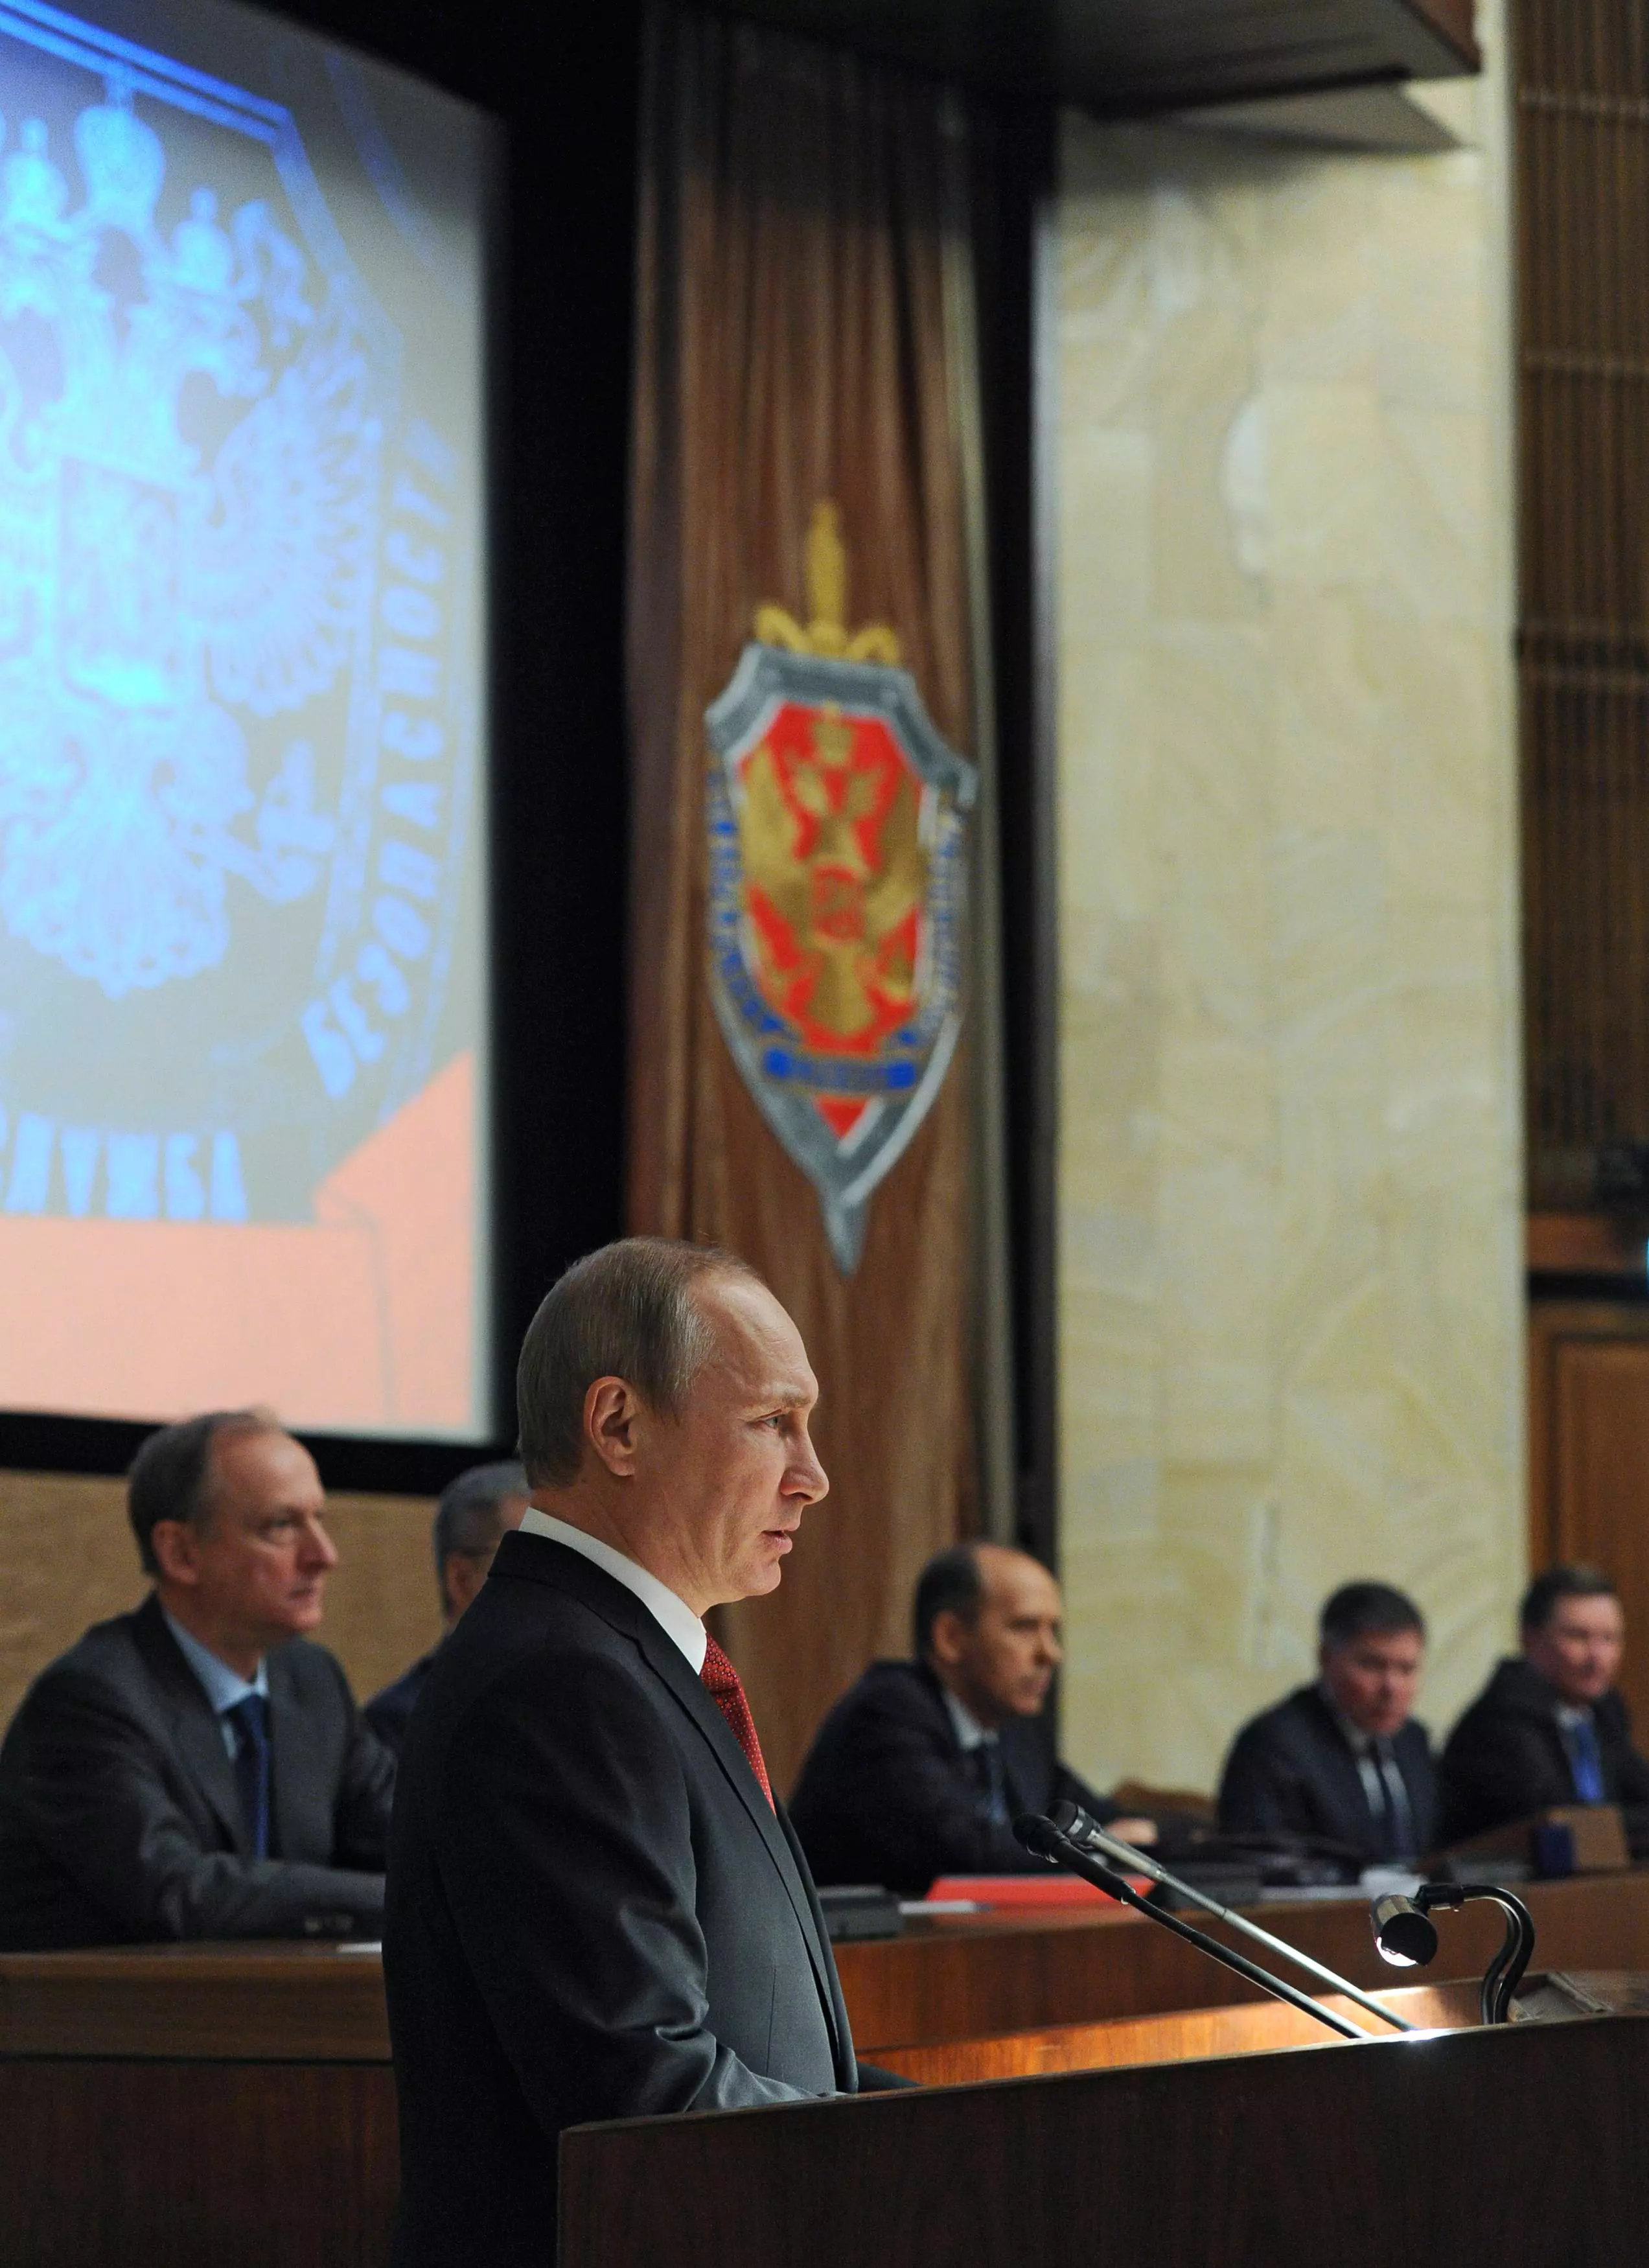 נשיא רוסיה פוטין נואם בפני ראשי שירות הביטחון, אתמול במוסקבה